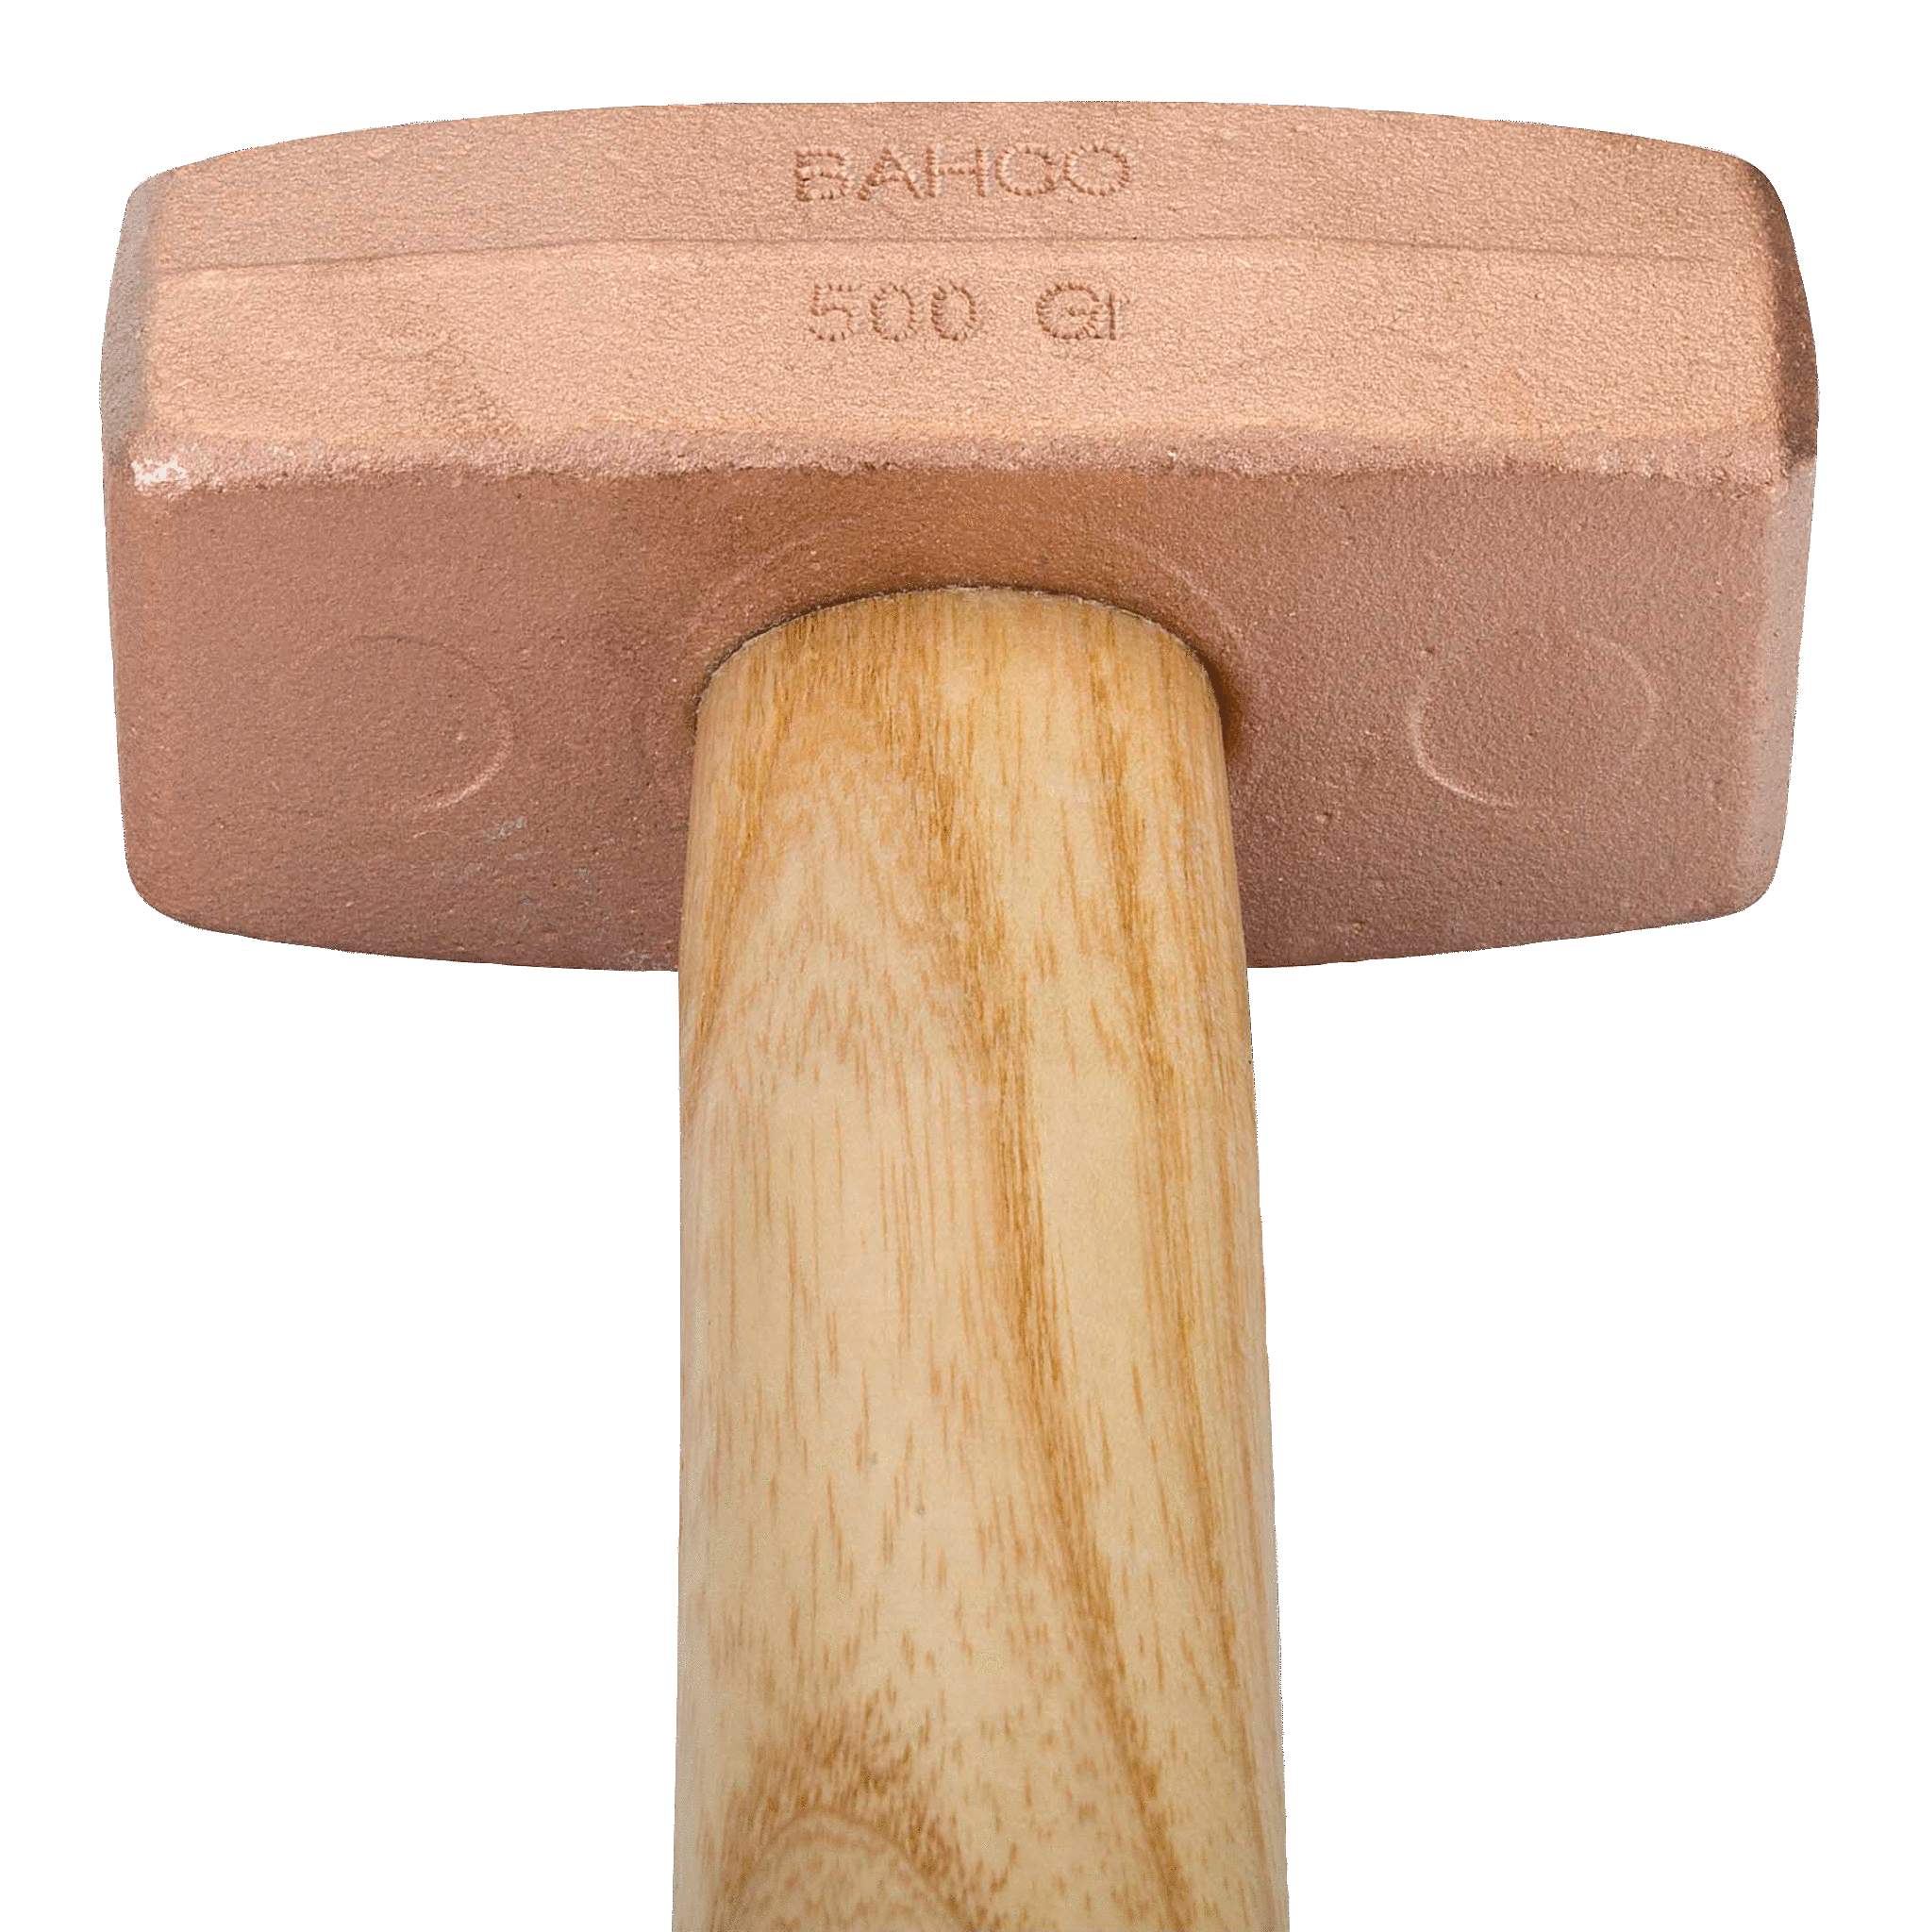 картинка Кувалда с медным бойком, деревянная рукоятка BAHCO 413020000 от магазина "Элит-инструмент"